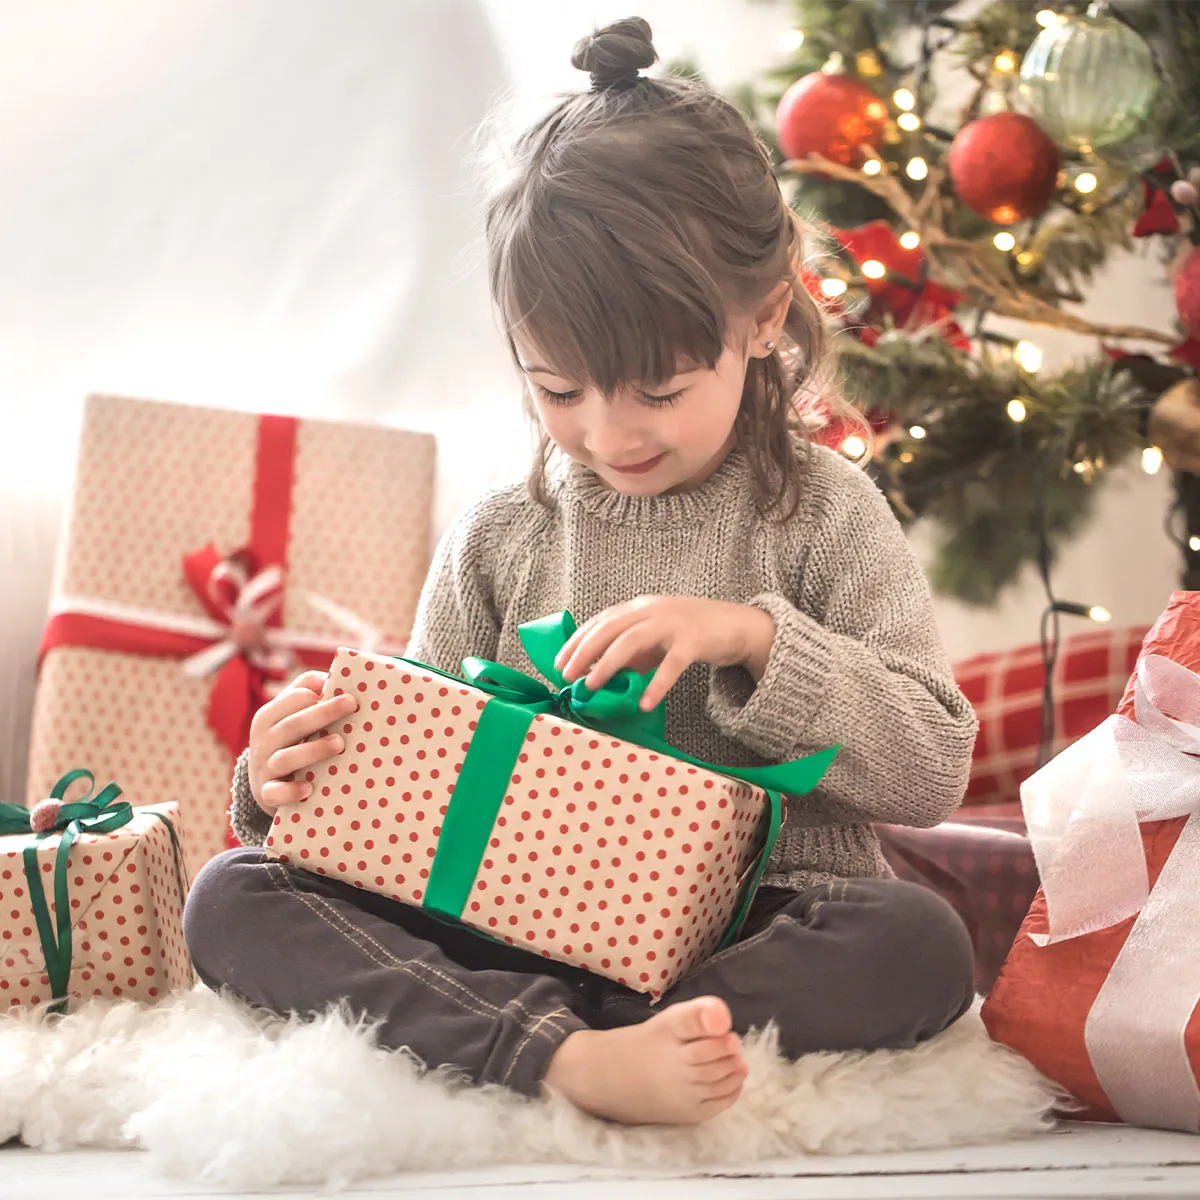 Weihnachtsgeschenke für Kinder - Holzspielzeug - Pädagogisch wertvoll